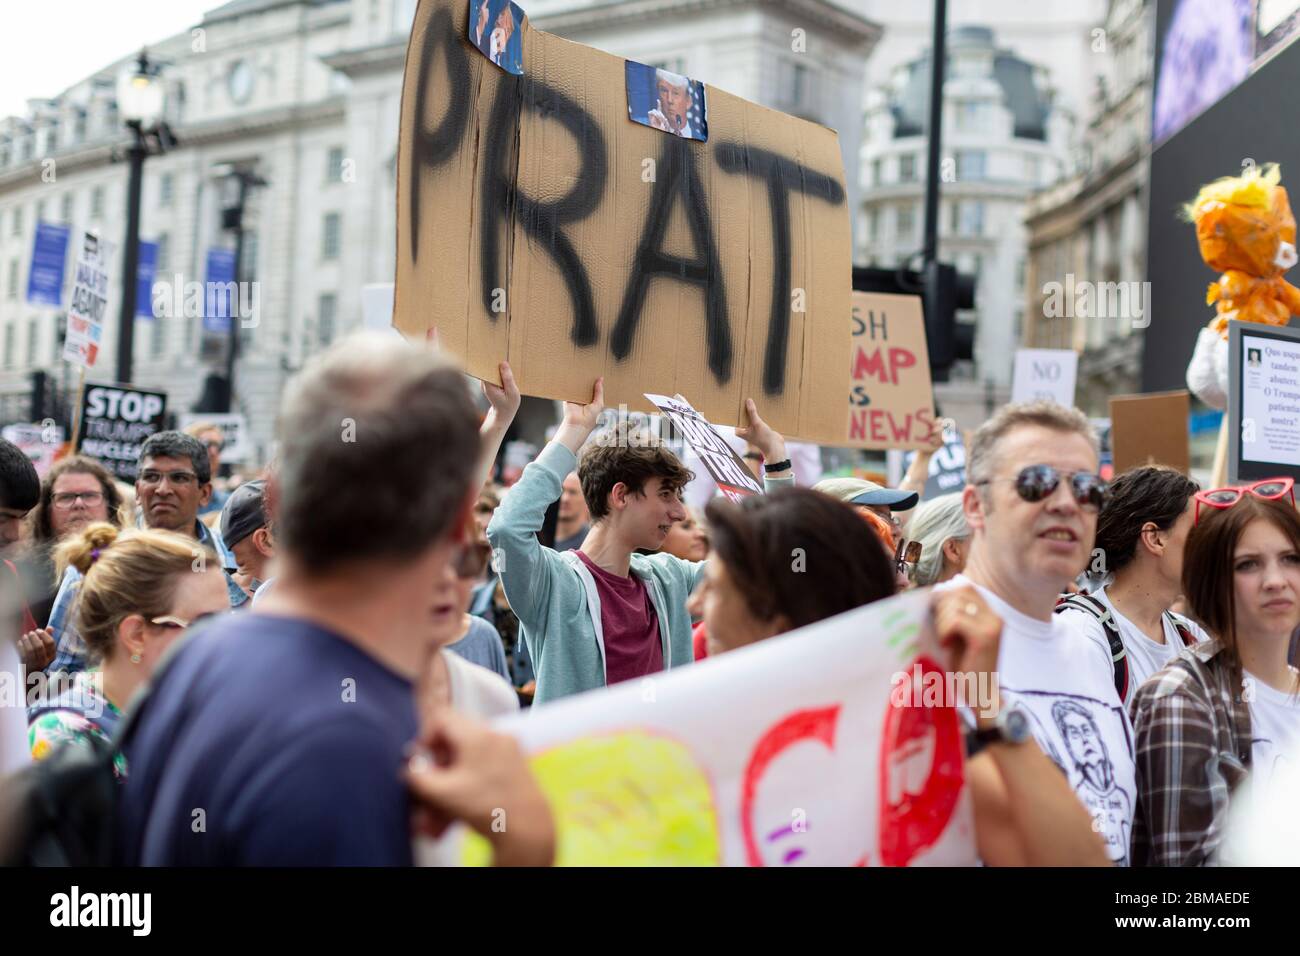 Un jeune homme tenant un panneau indiquant « Prat », lors de la manifestation contre la visite de Donald Trump à Londres, le 13 juillet 2018 Banque D'Images